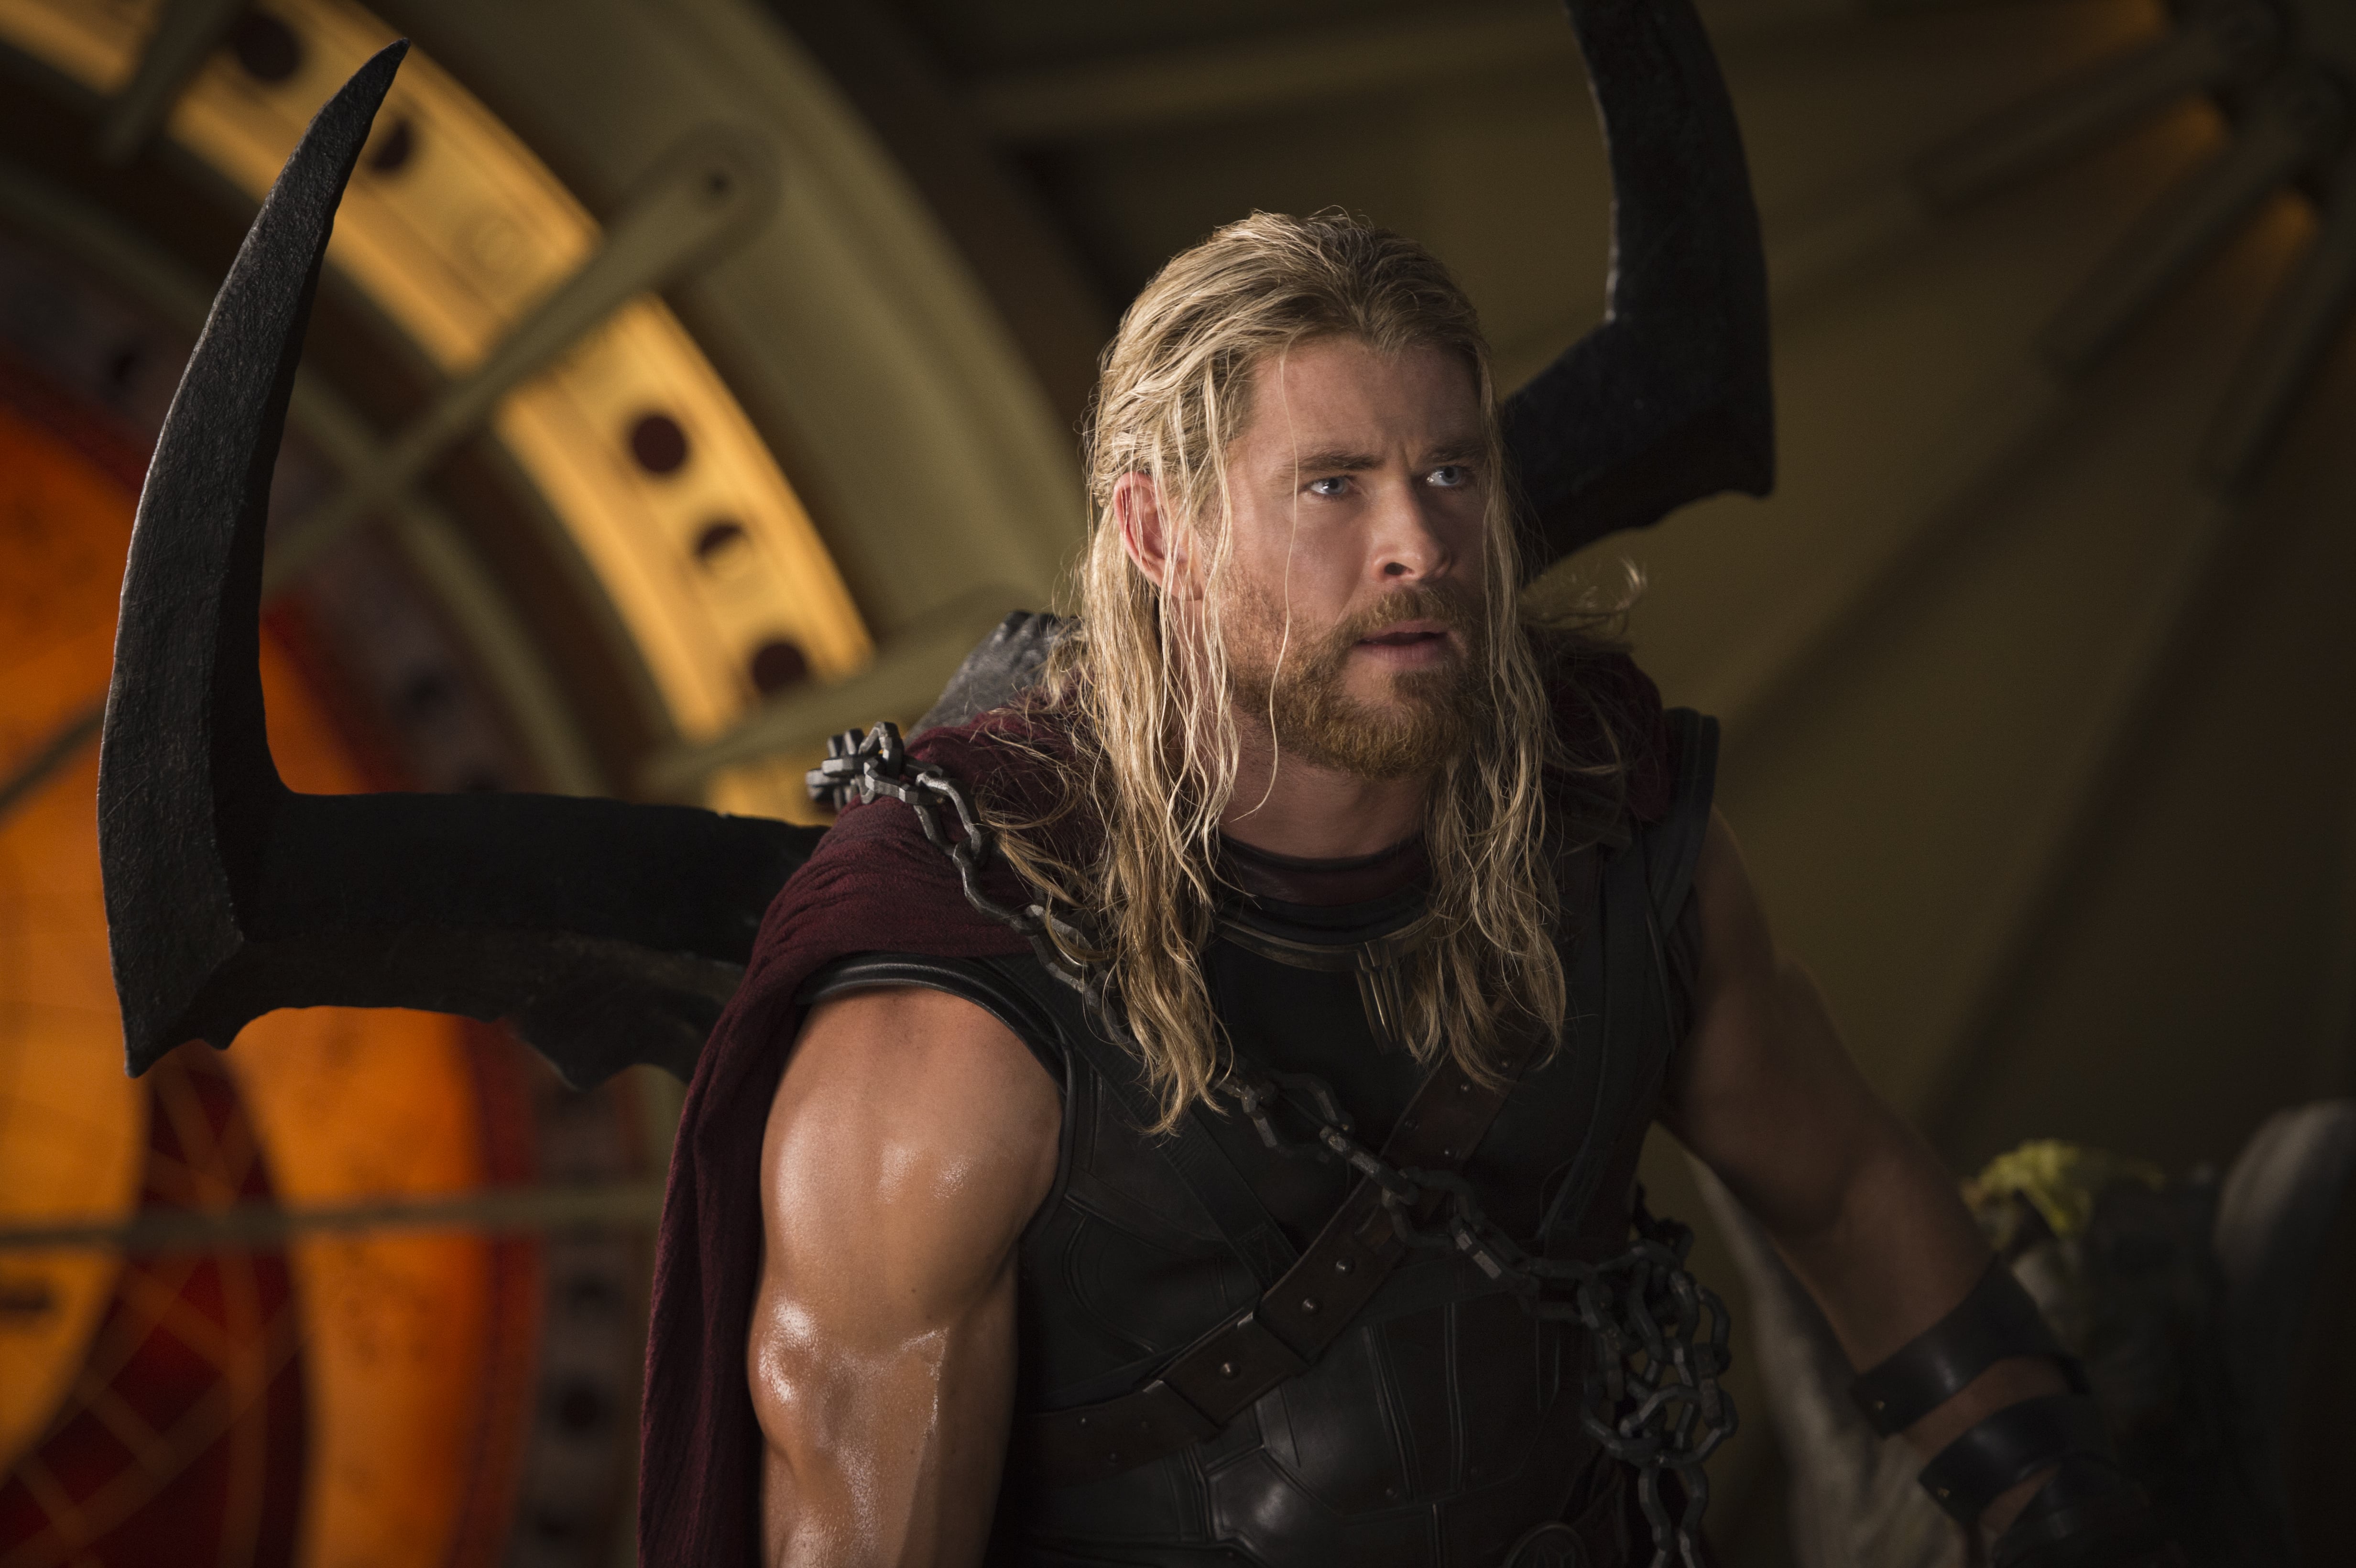 Thor: Ragnarok' - The Ringer